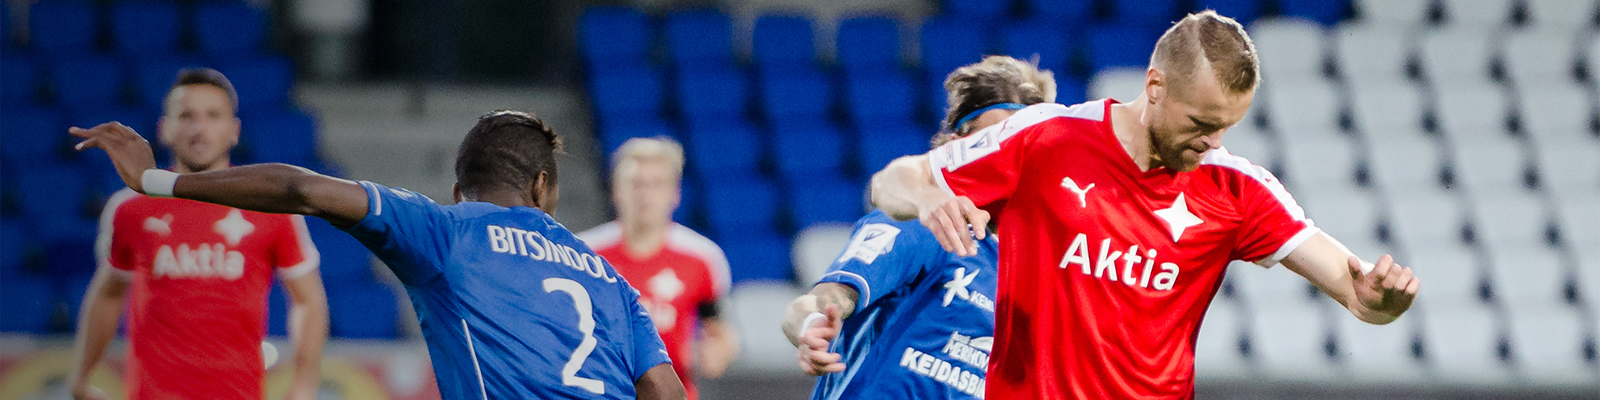 Otteluennakko: HIFK:n liigakausi käynnistyy <br> Rovaniemellä PS Kemiä vastaan